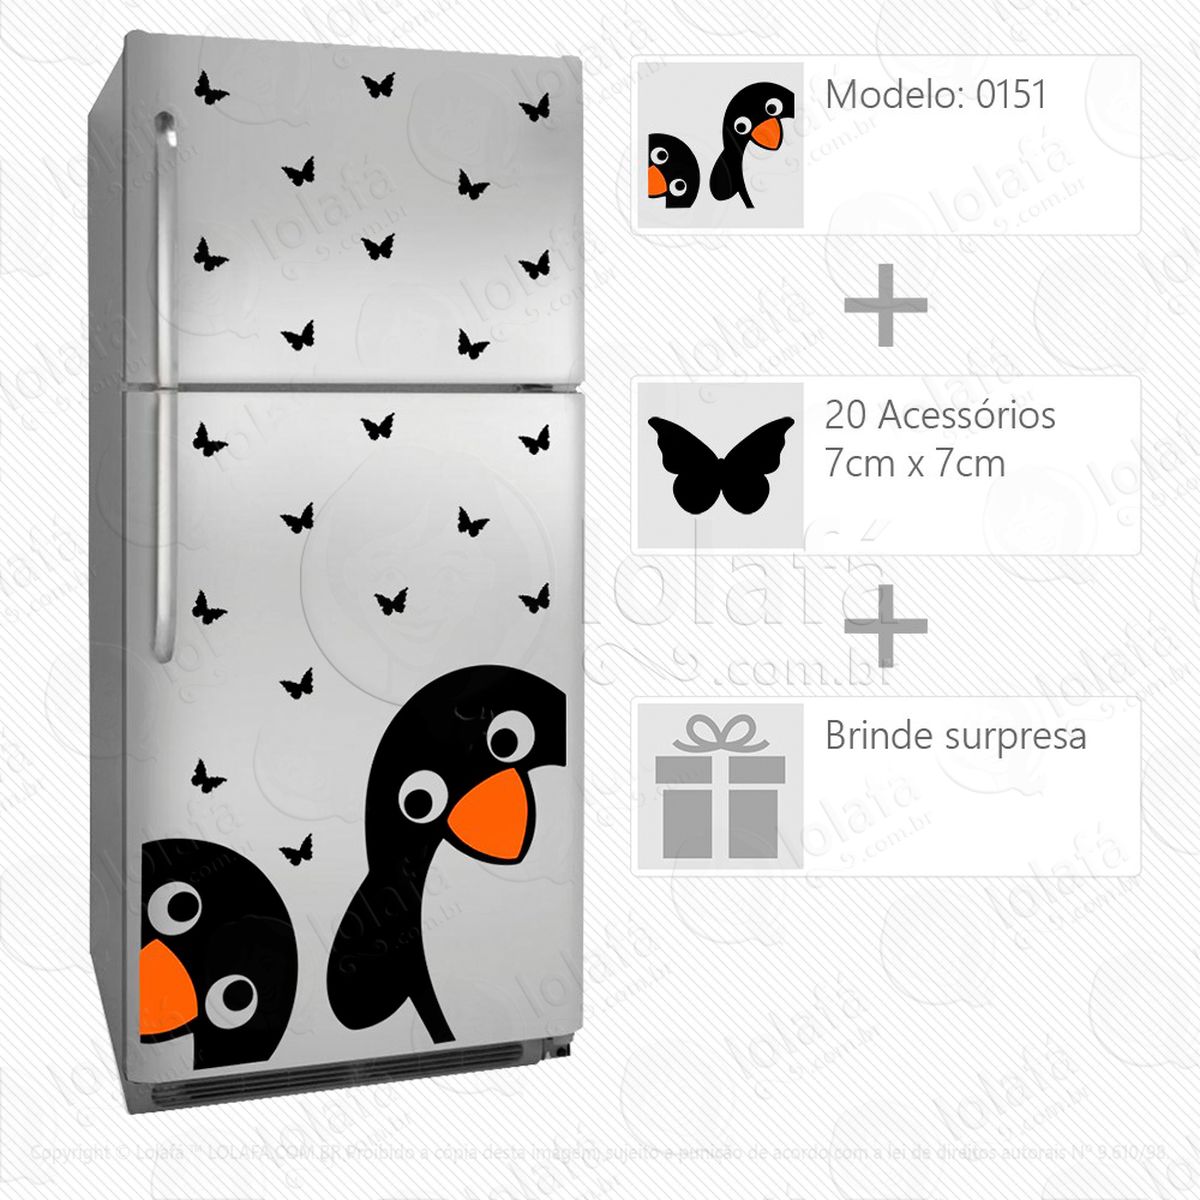 pinguins adesivo para geladeira e frigobar - mod:151